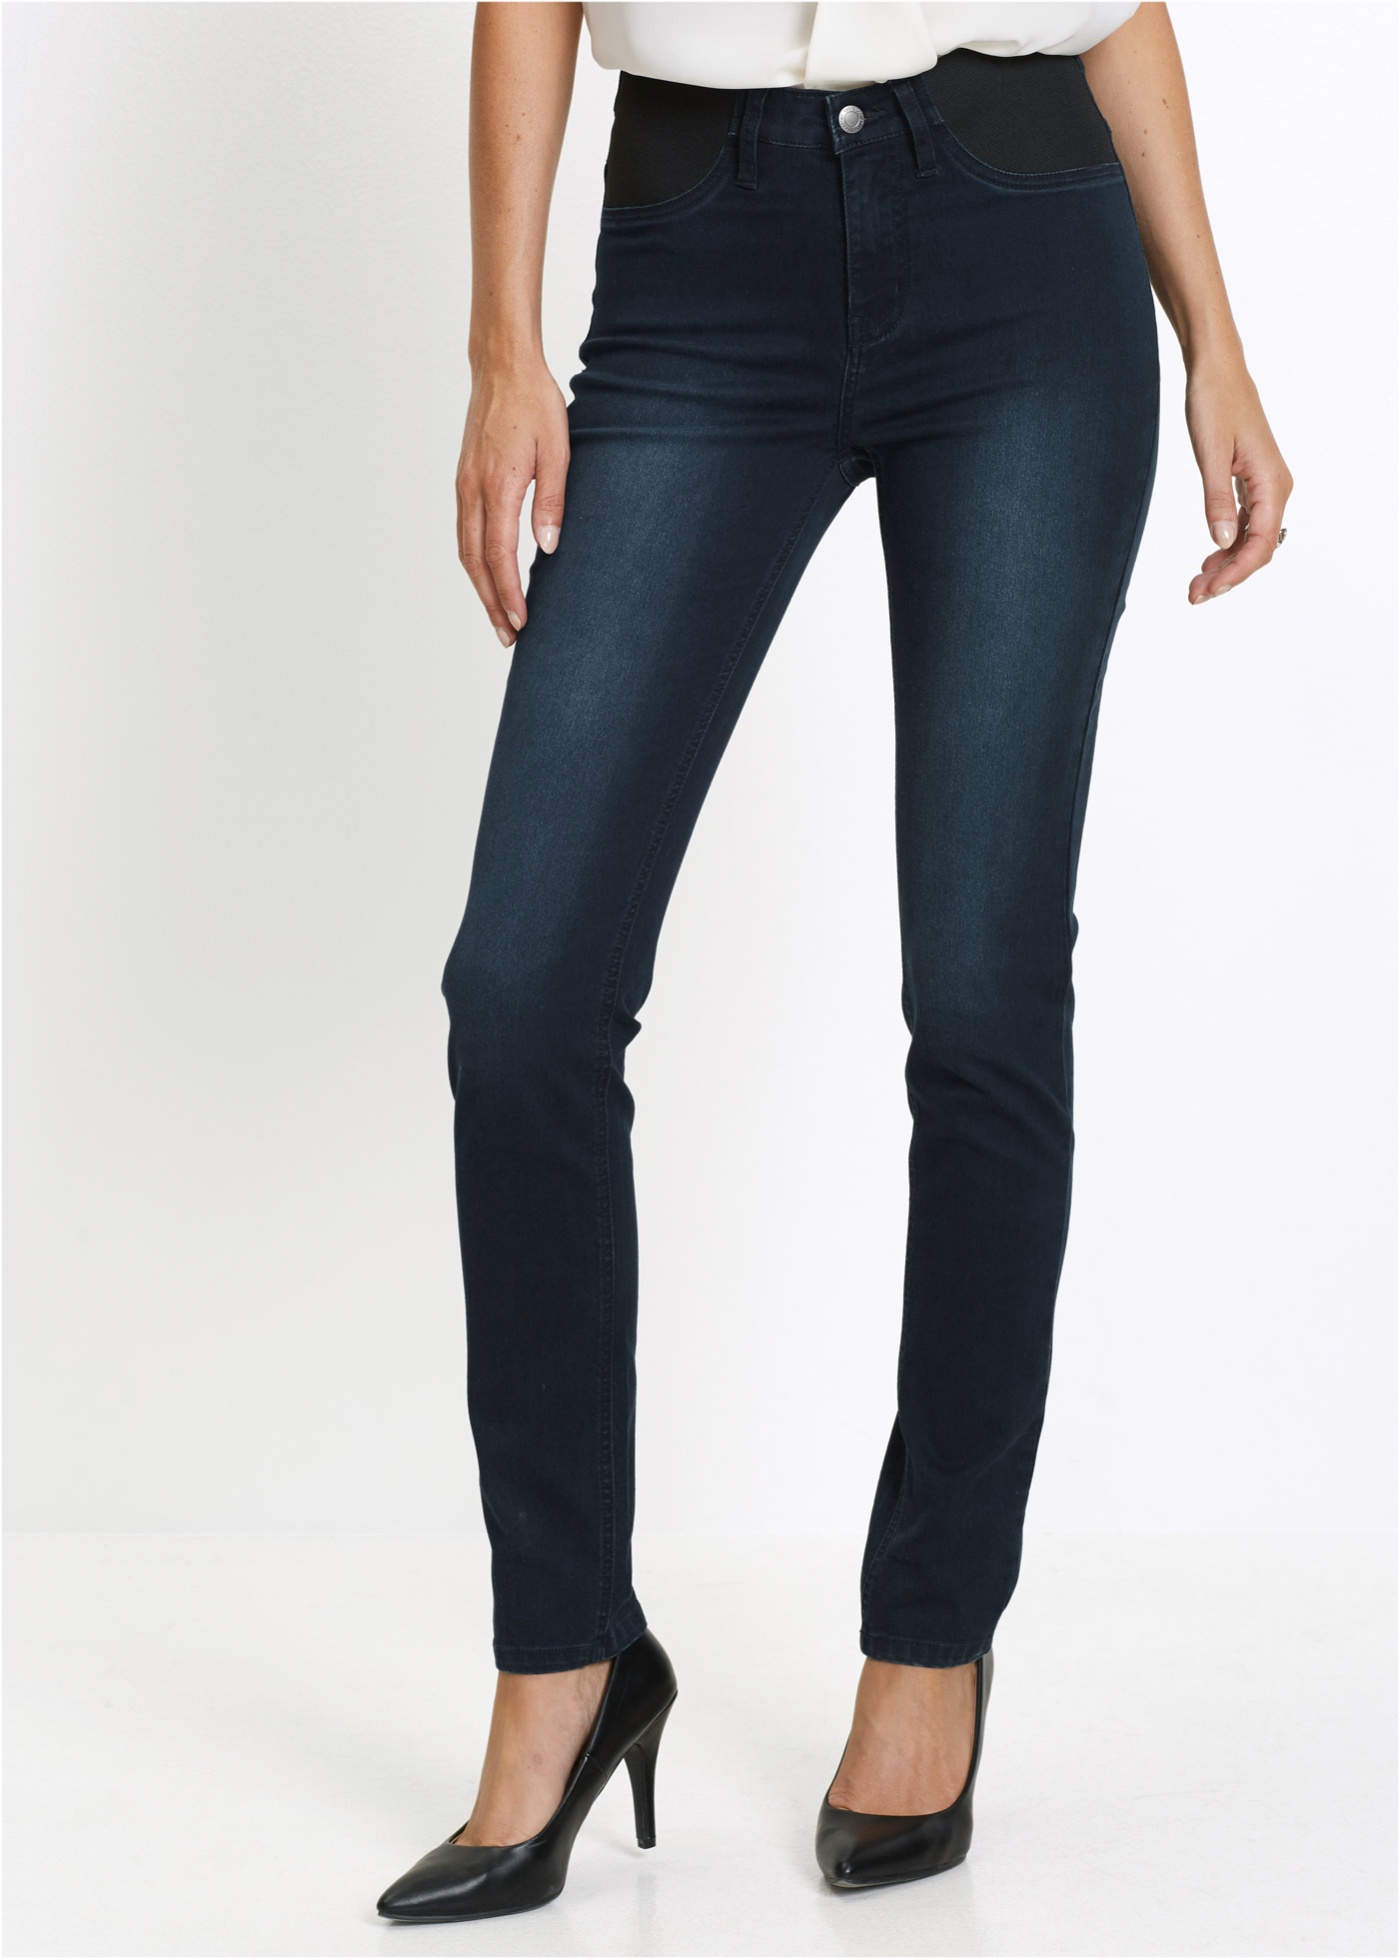 Ansprechende Jeans Mit Breiten Elastik Einsätzen Darkblue Stone Normal